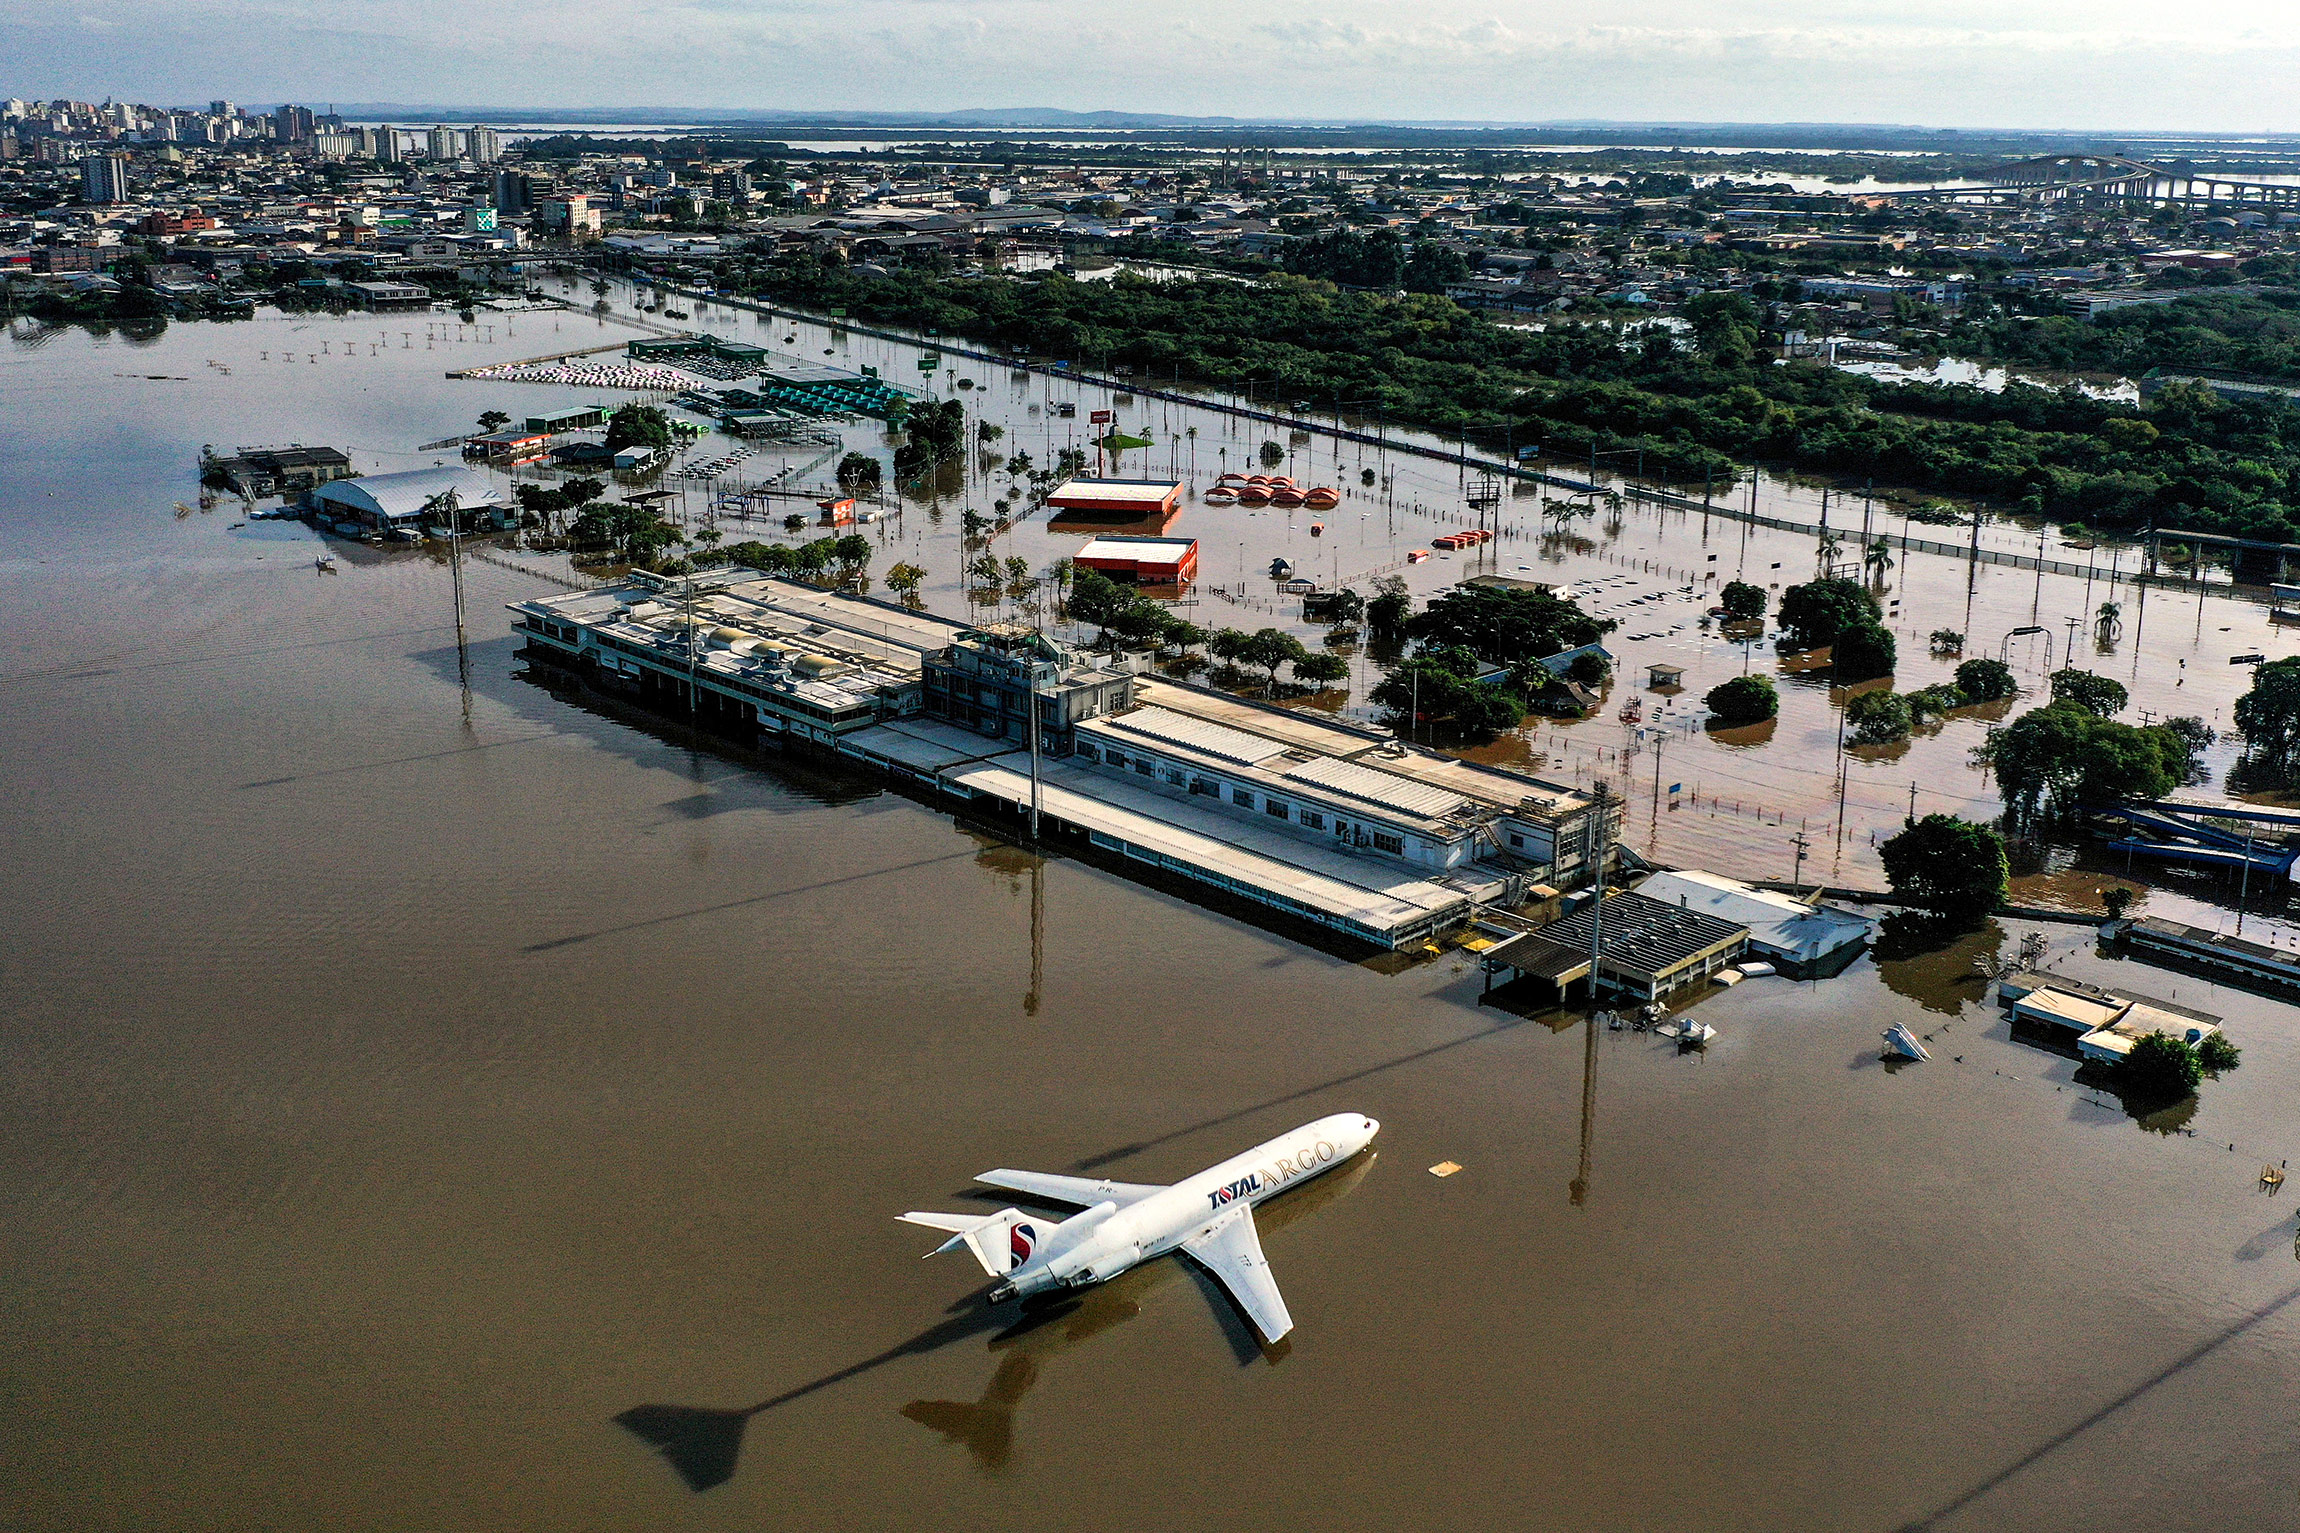 Грузовой самолет в затопленном международном аэропорту Порту-Алегри в южном штате Риу-Гранди-ду-Сул.&nbsp;В результате наводнений на юге Бразилии погибли по меньшей мере 67 человек, а еще 101 пропал без вести. По оценкам властей штата Риу-Гранди-ду-Сул, 69 тыс. человек лишились домов, по меньшей мере 13 тыс. находятся во временных пунктах размещения.